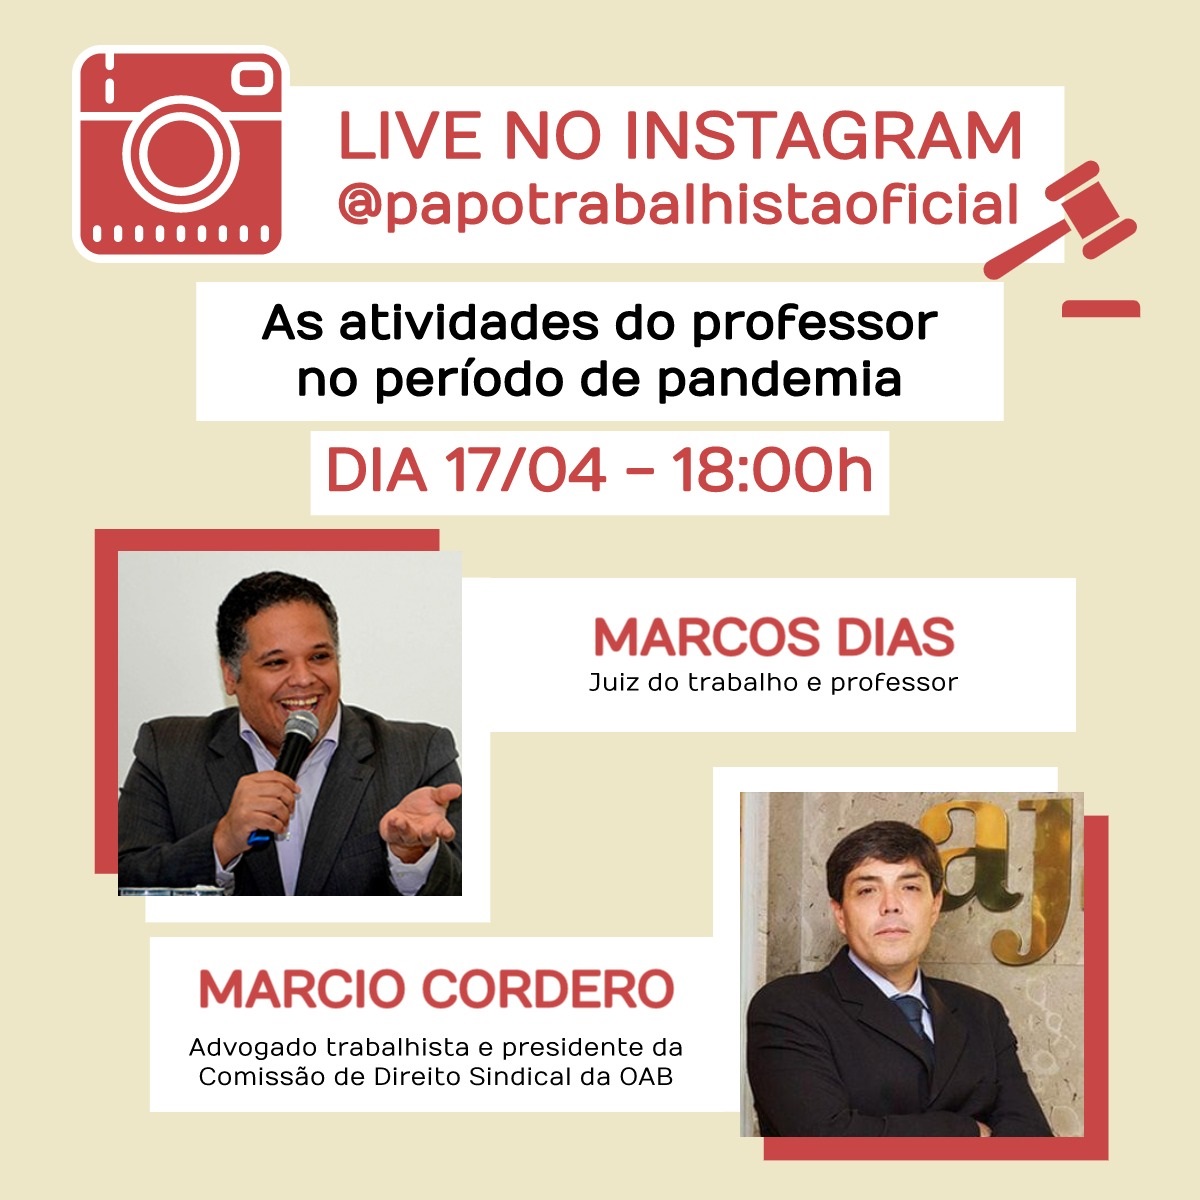 Marcio Cordero faz live no Instagram sobre “As atividades do professor no período de pandemia”, nesta sexta (17/4)